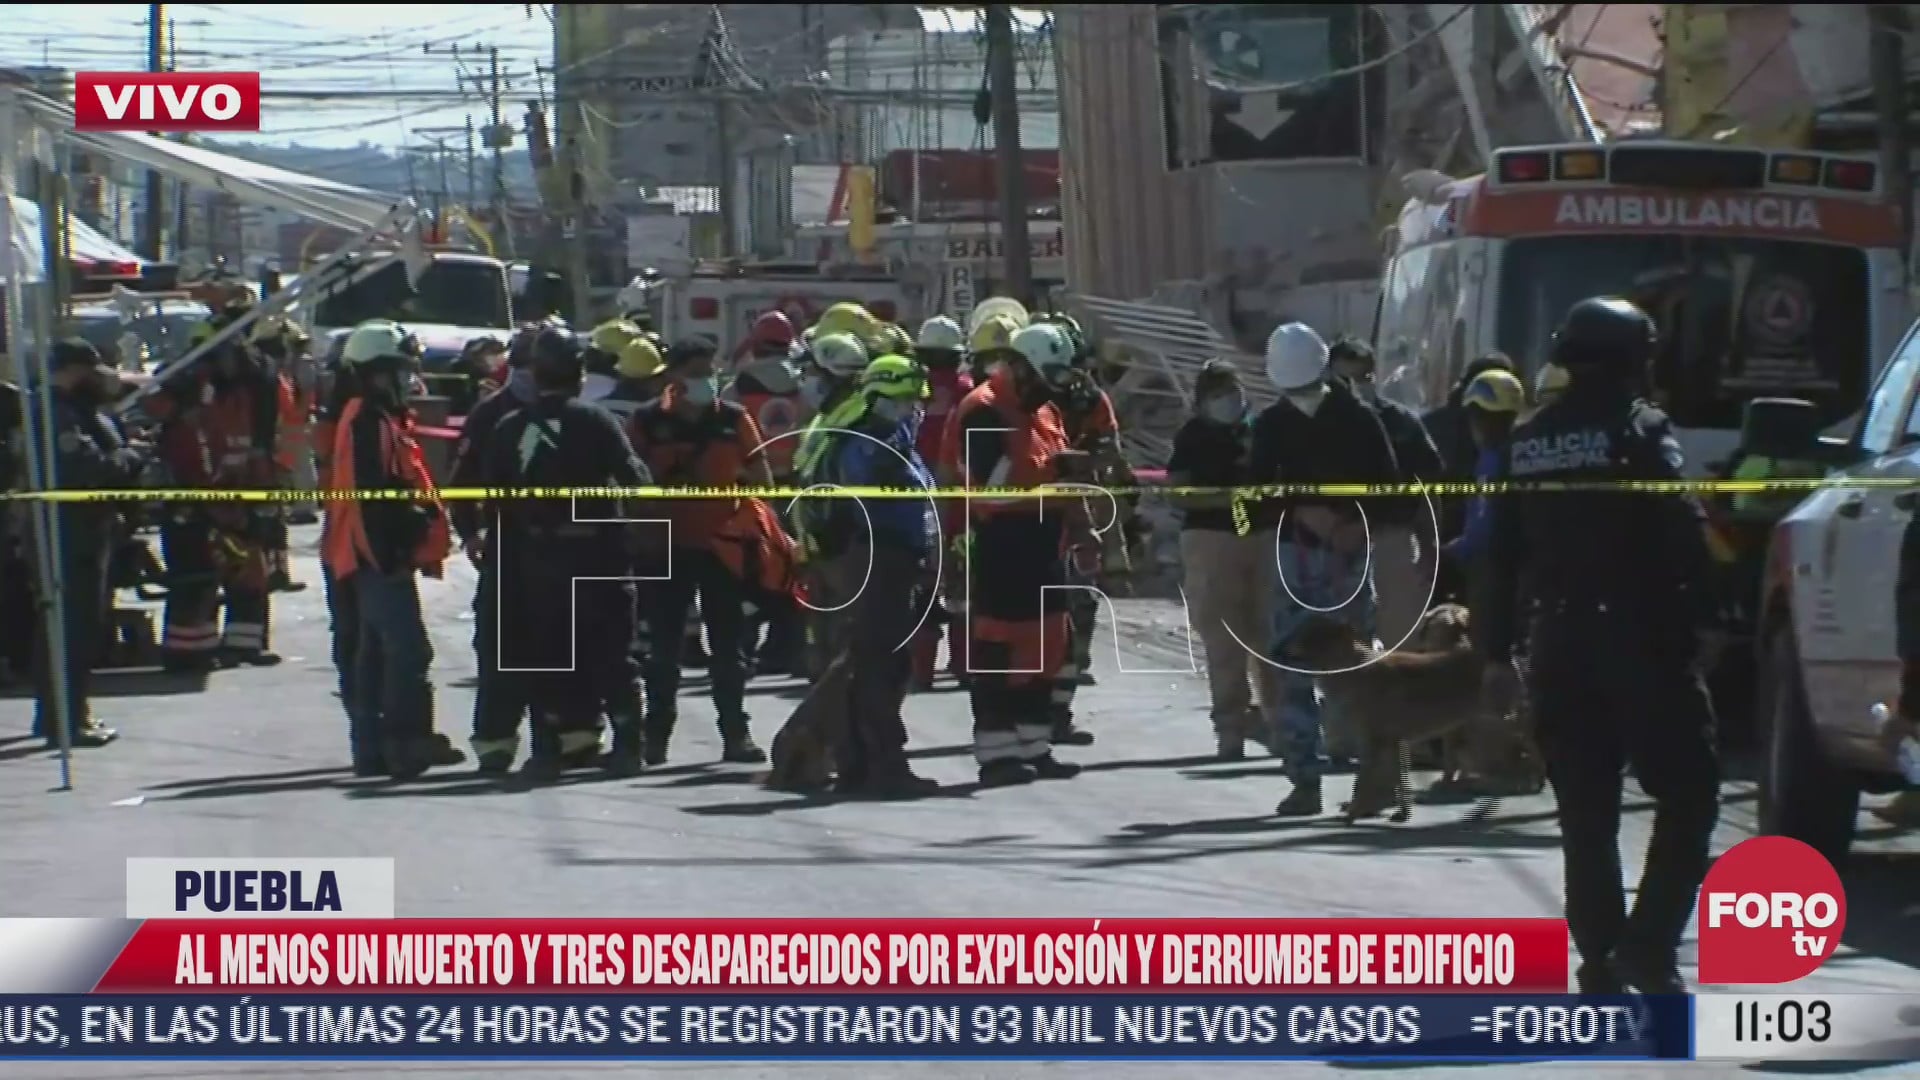 al menos un muerto y tres desaparecidos tras explosion de gas en puebla